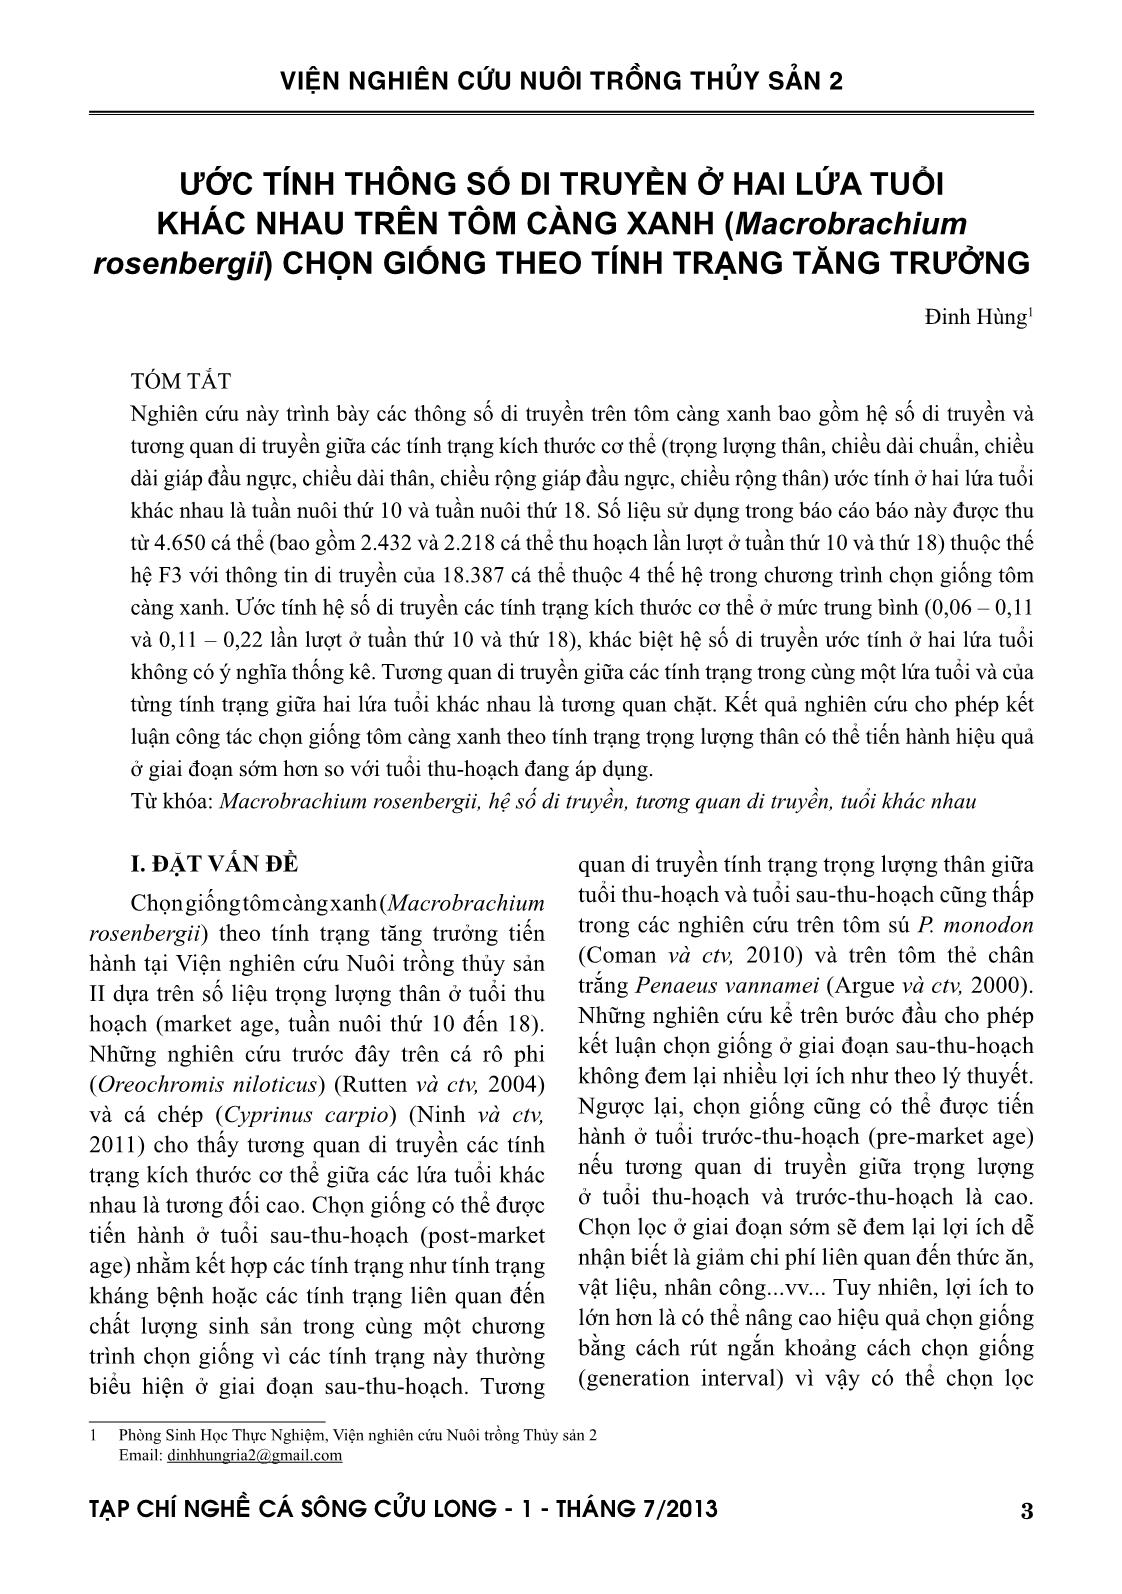 Tạp chí Nghề cá sông Cửu Long - Số 01/2013 trang 3